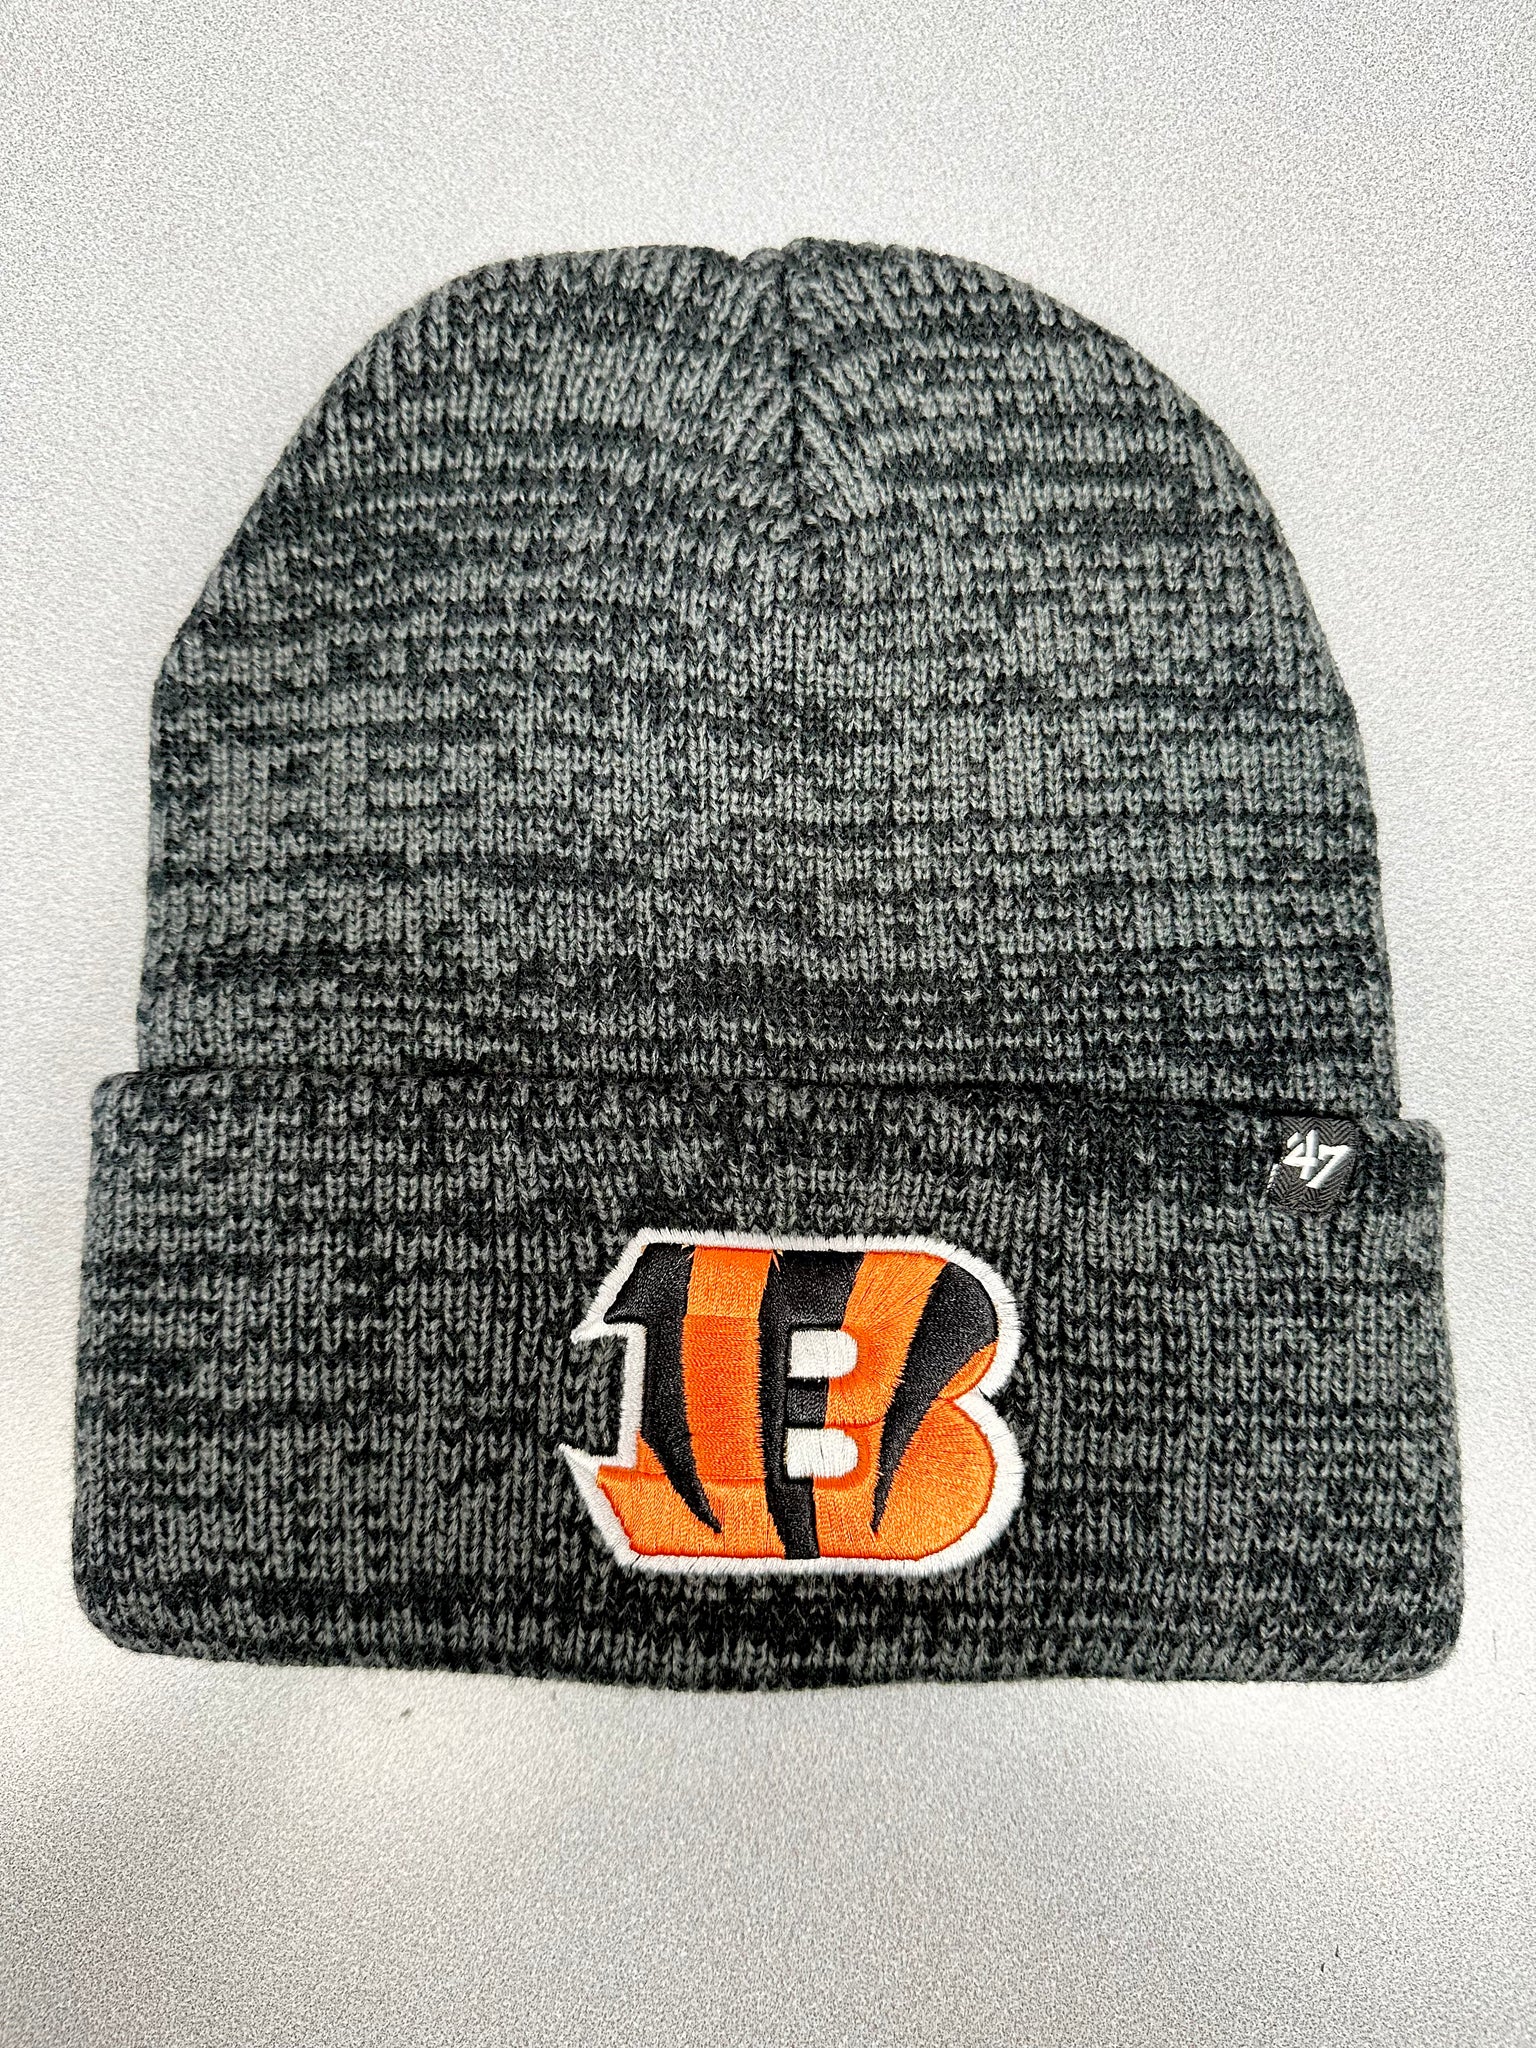 Cincinnati Bengals knit cap